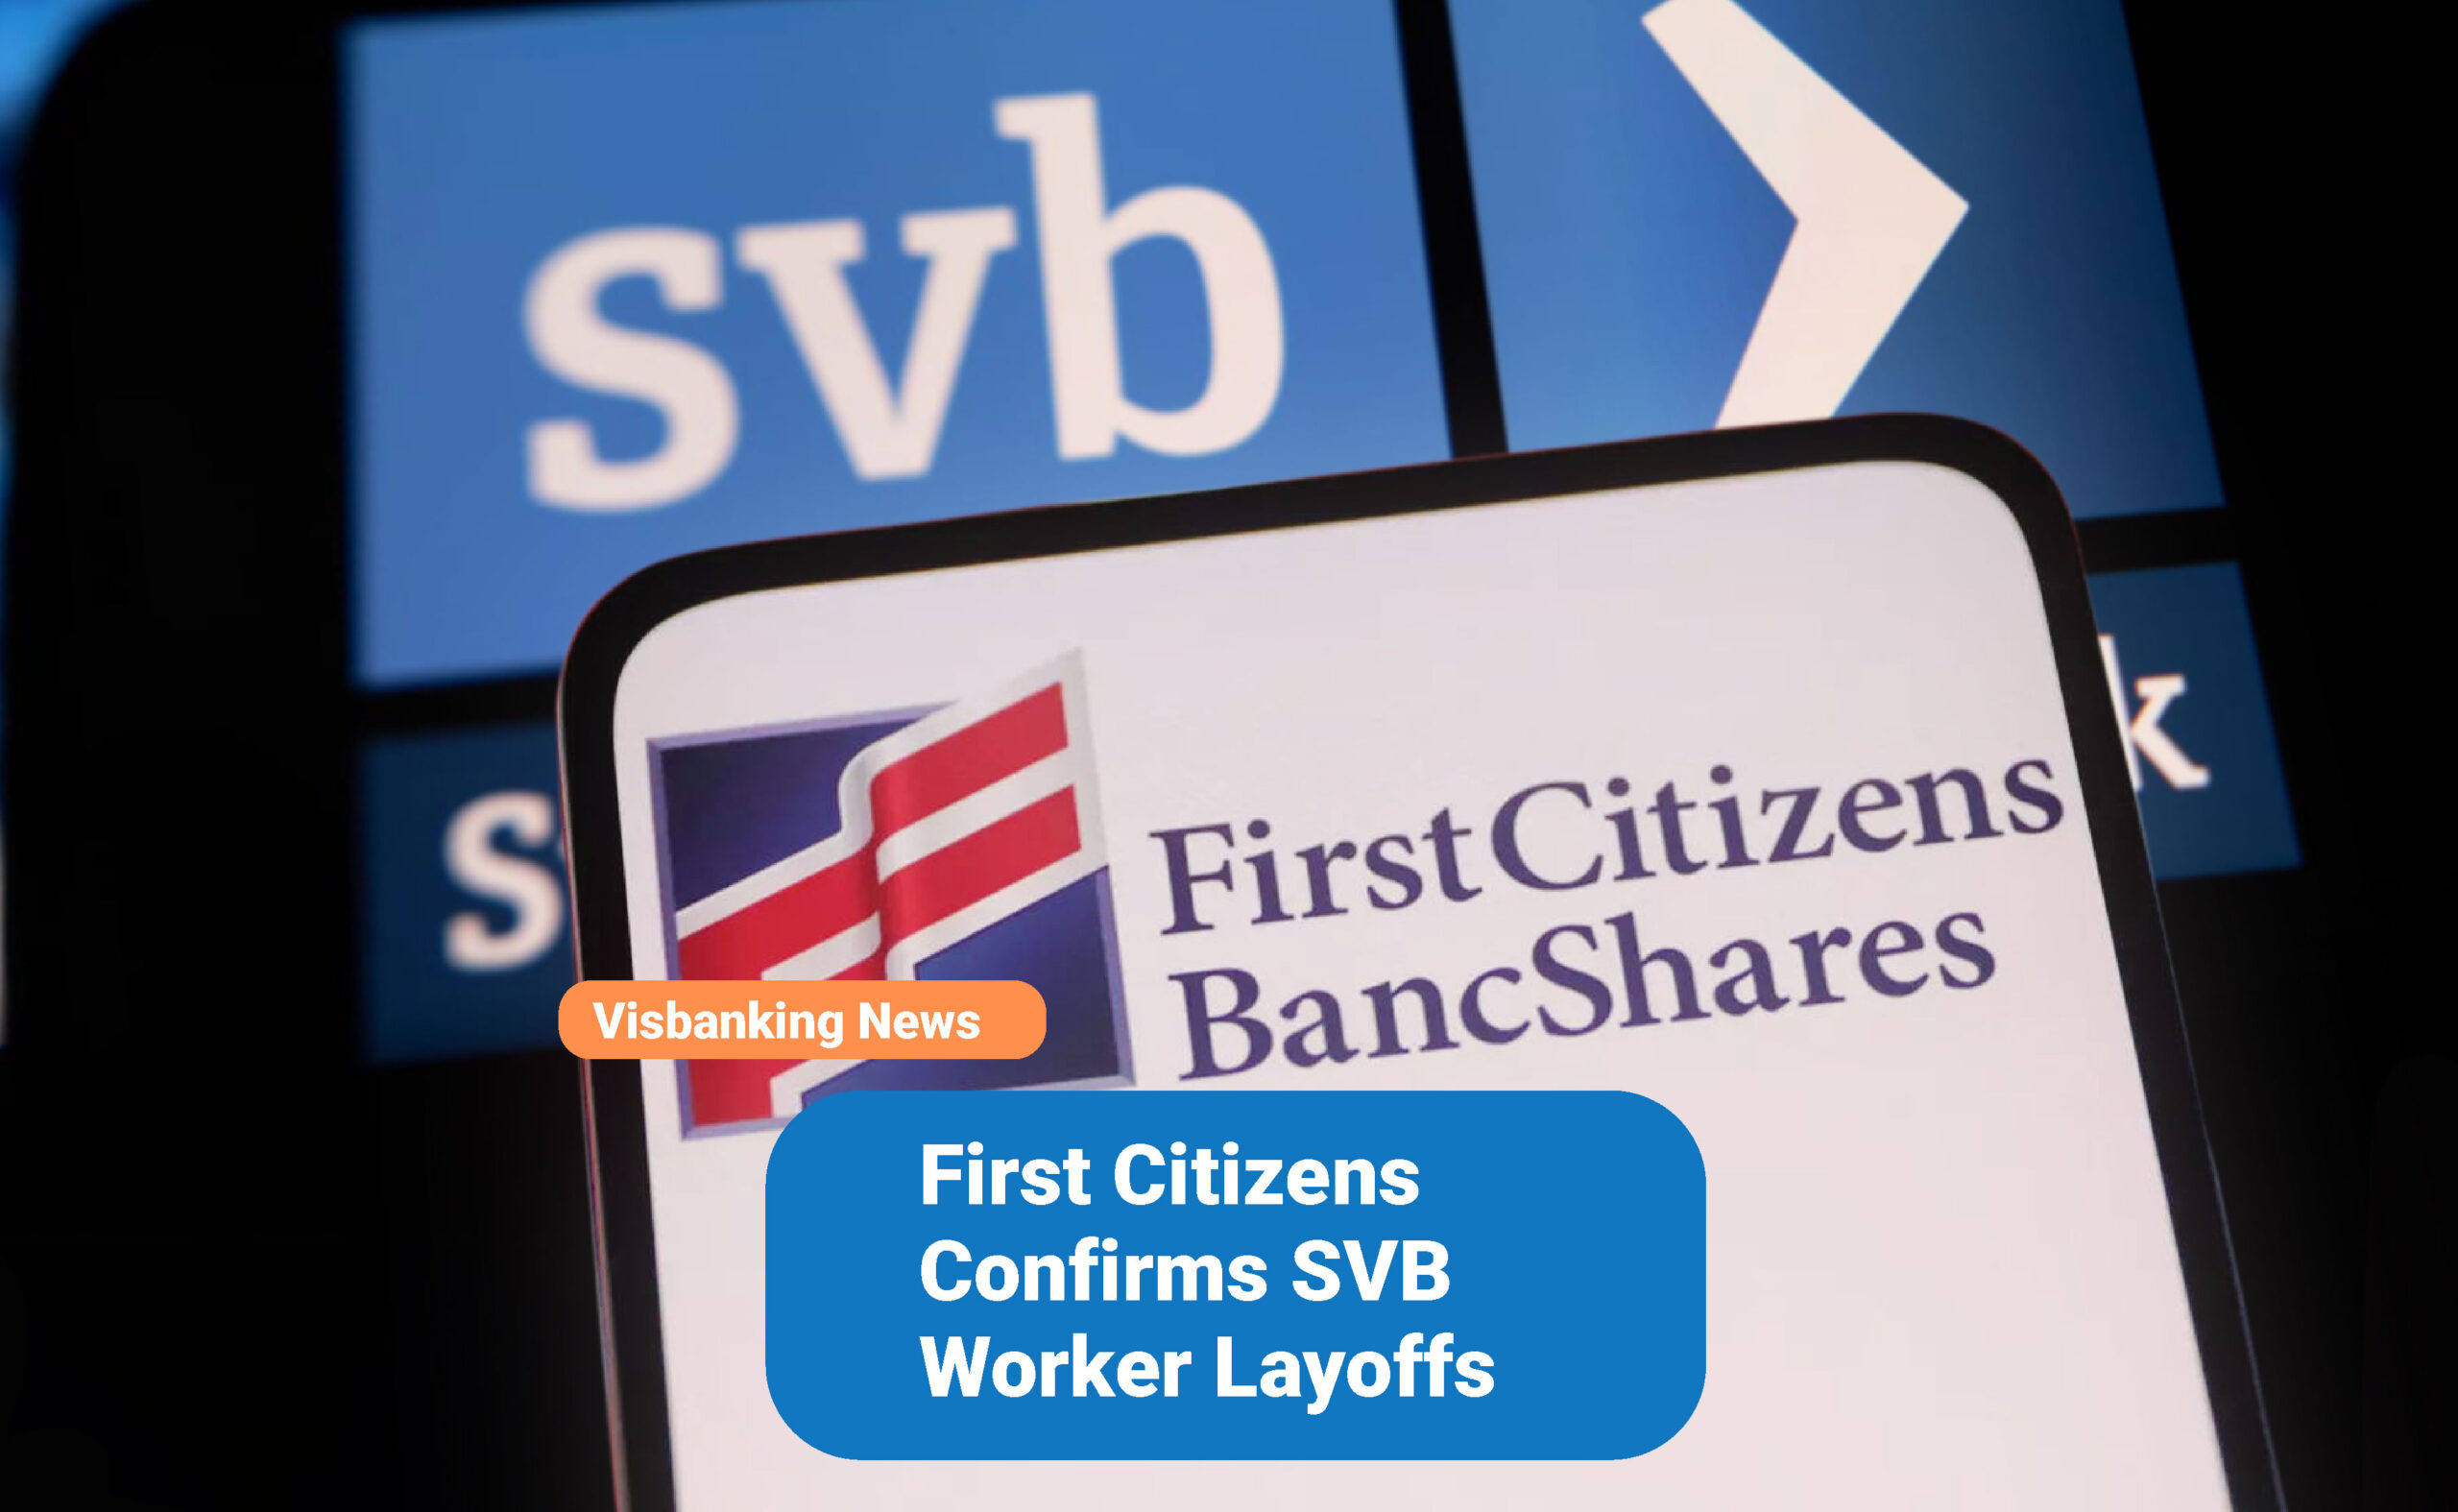 First Citizens Confirms SVB Worker Layoffs